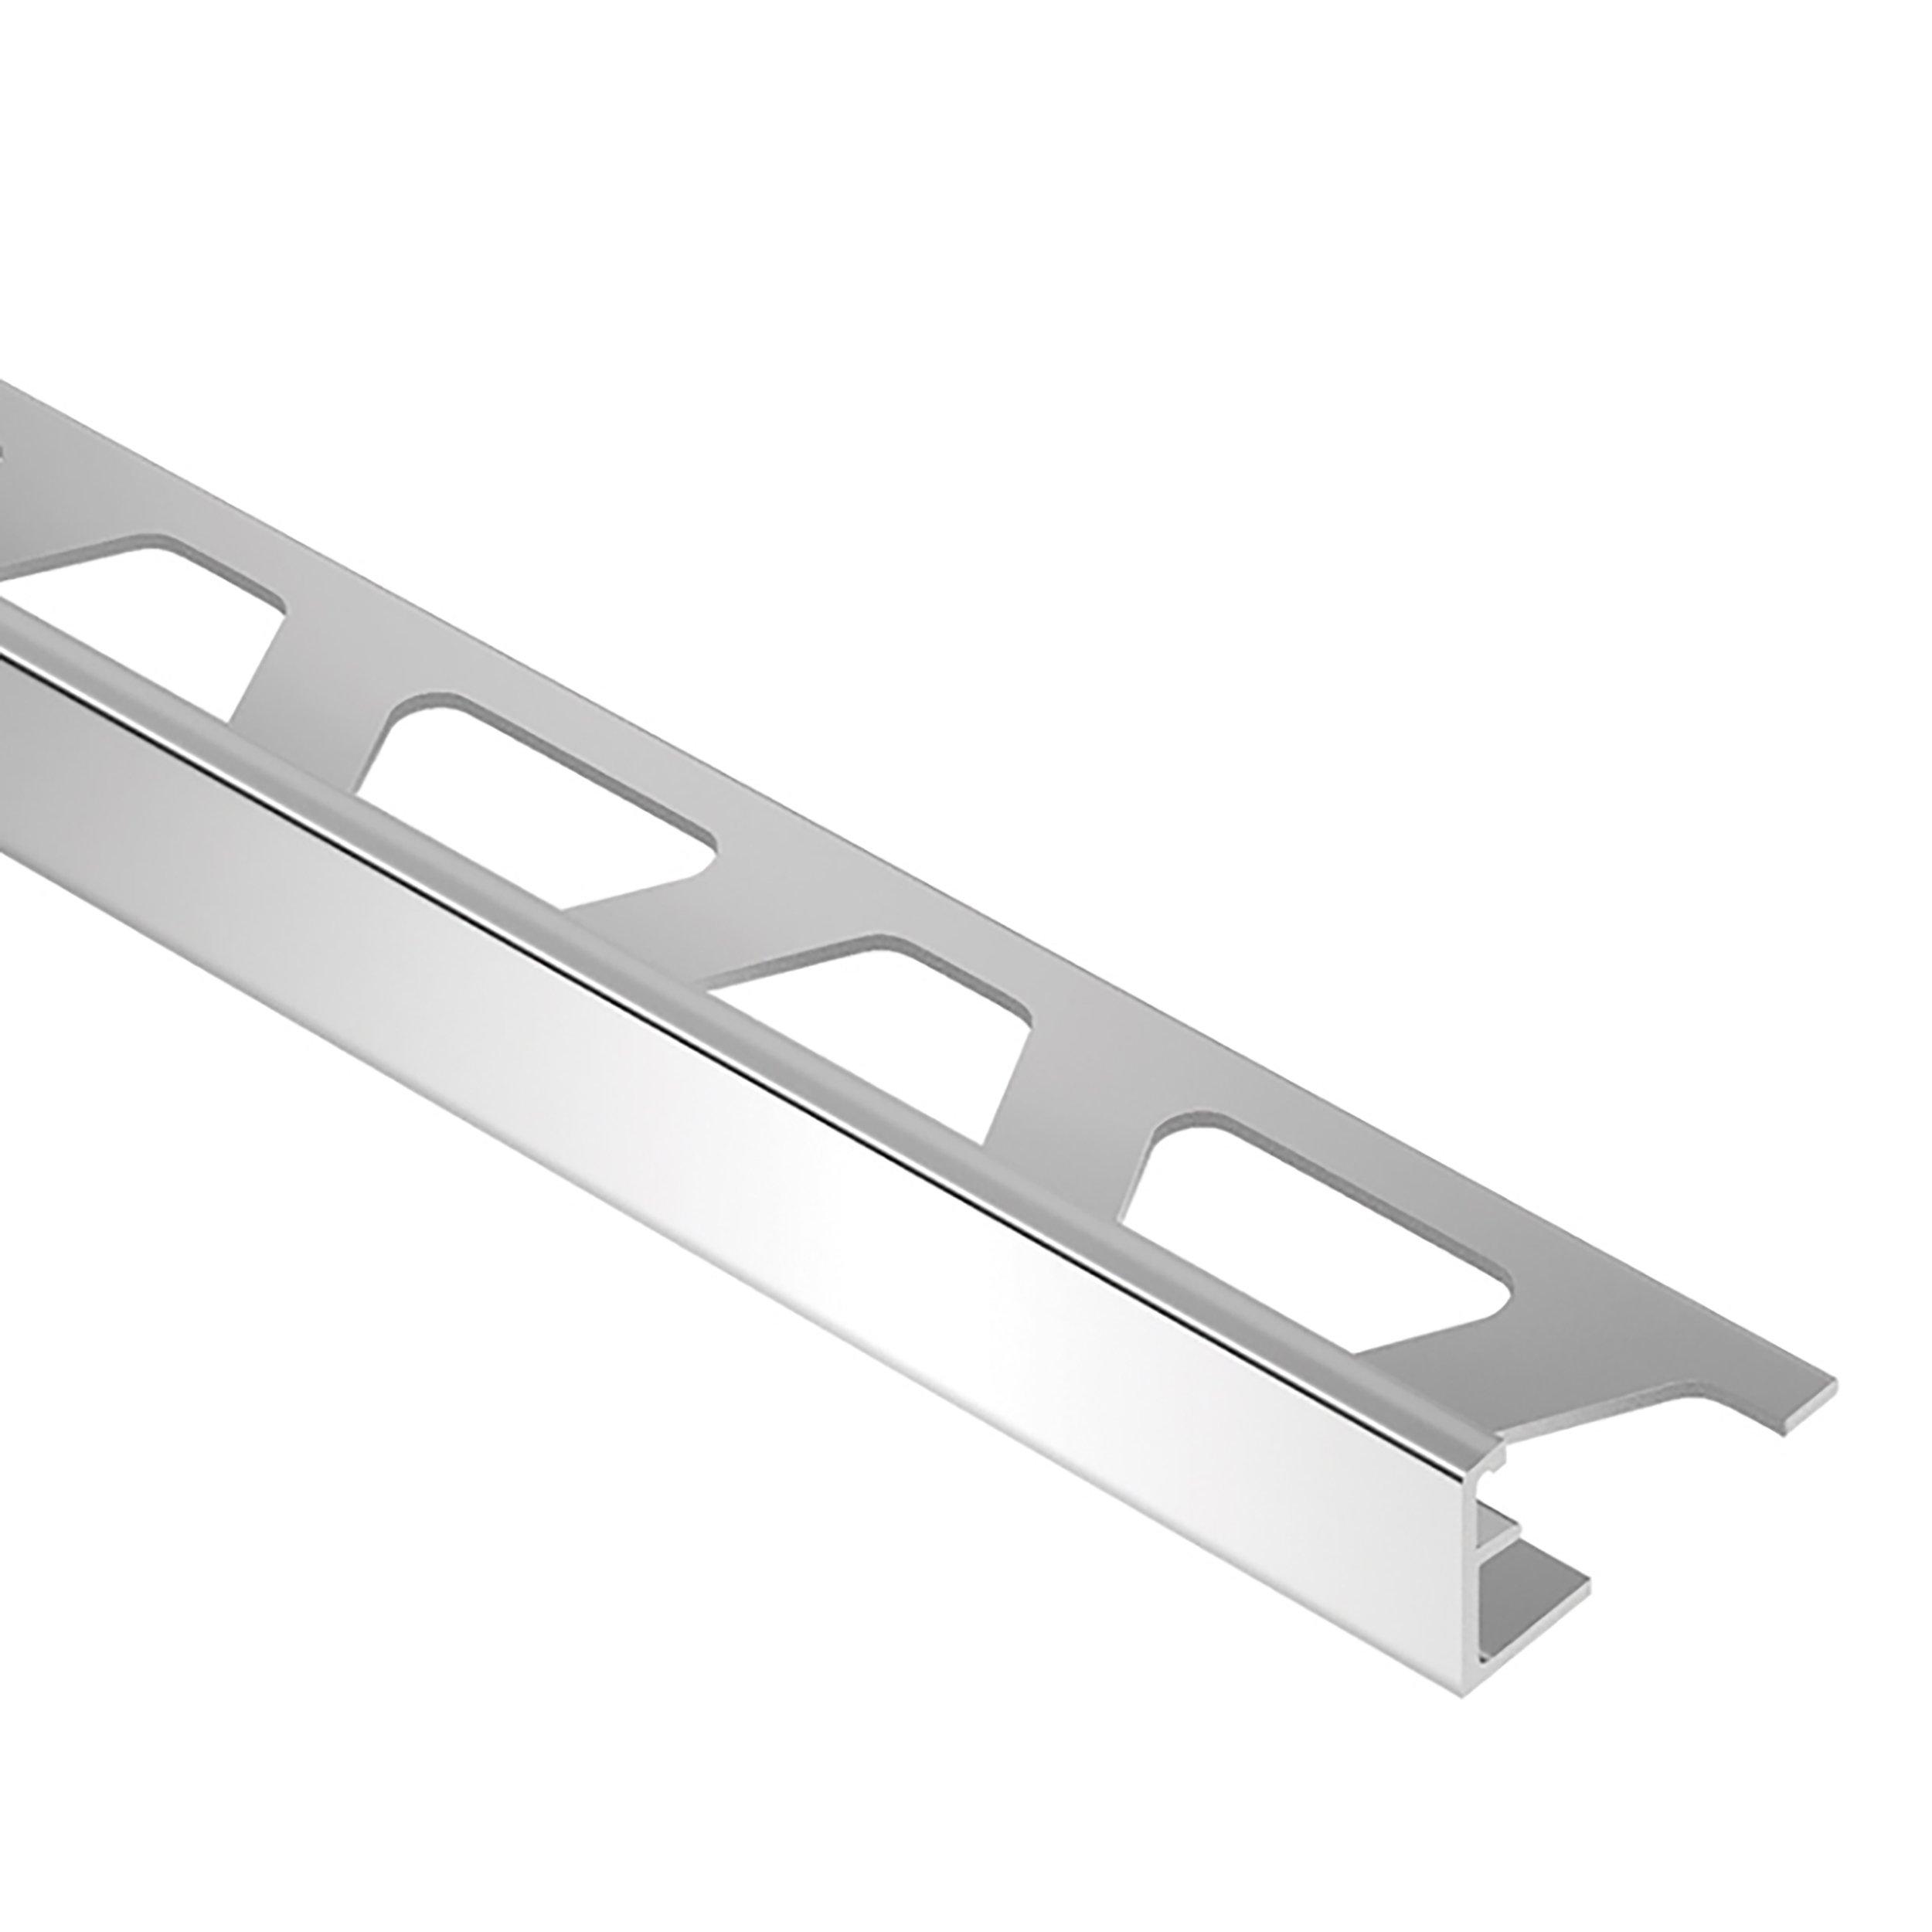 Schluter-Schiene Straight Edge Trim 3/8in. in Aluminum